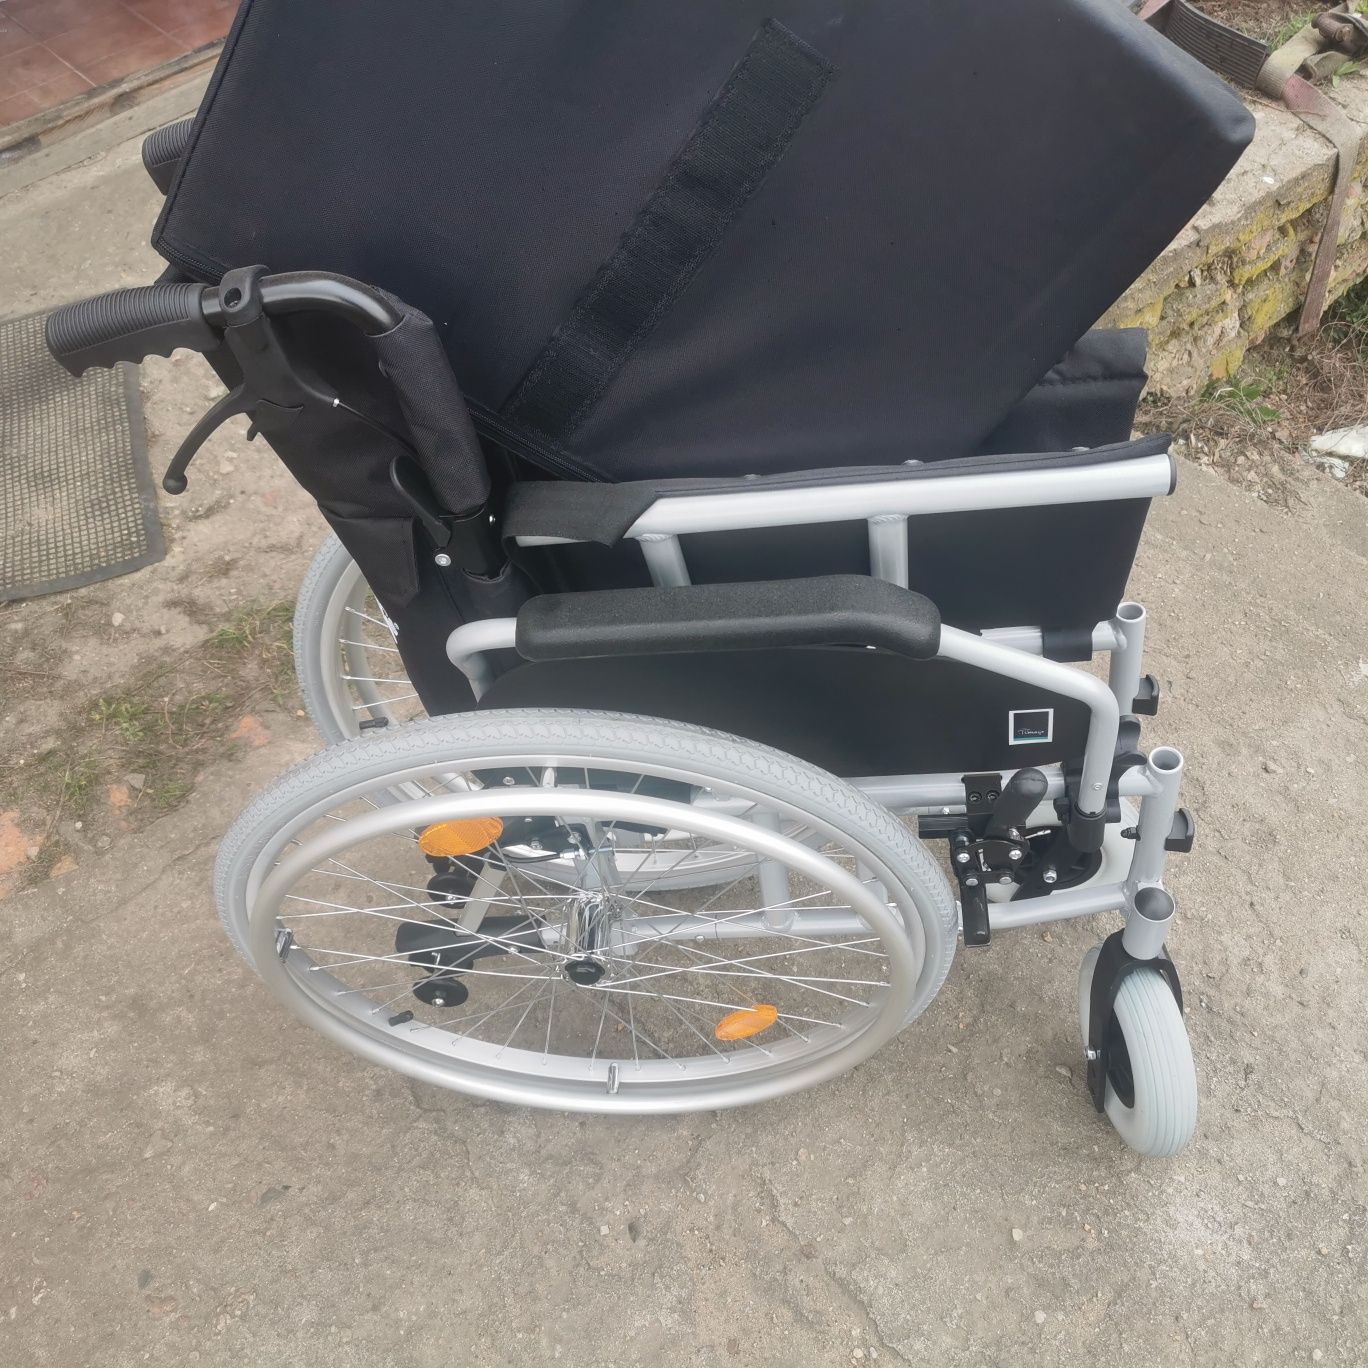 Sprzedam nowy wózek inwalidzki